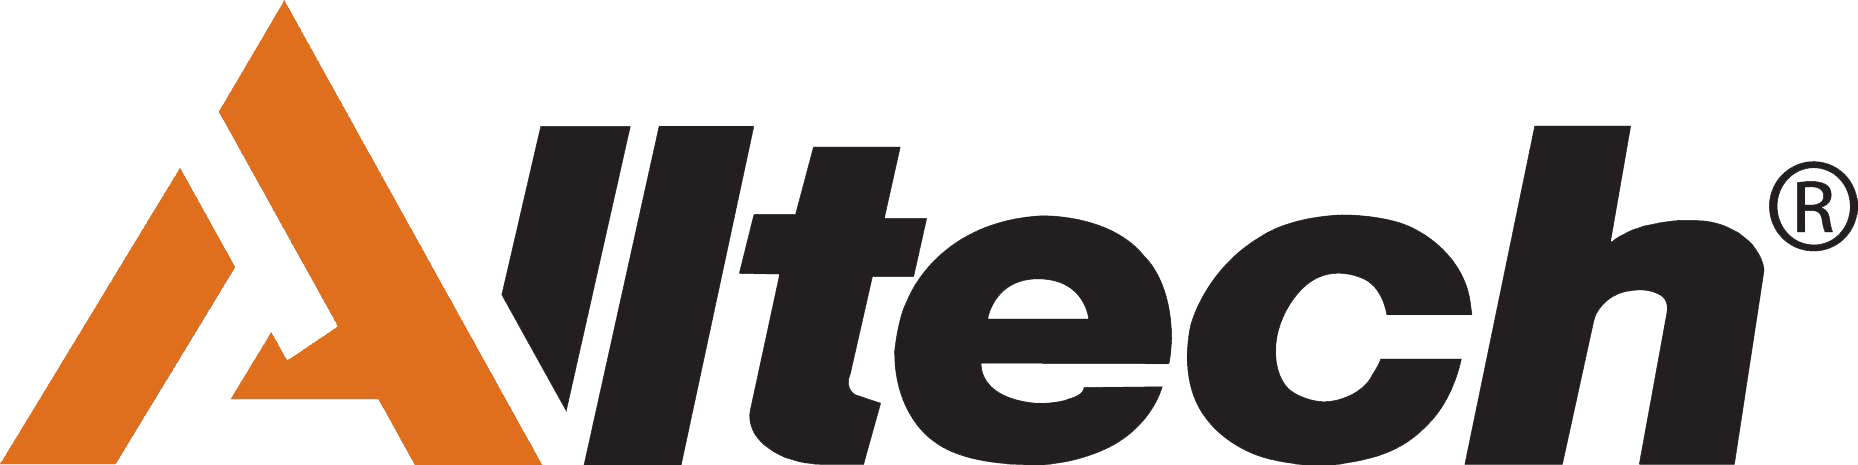 alltech-logo